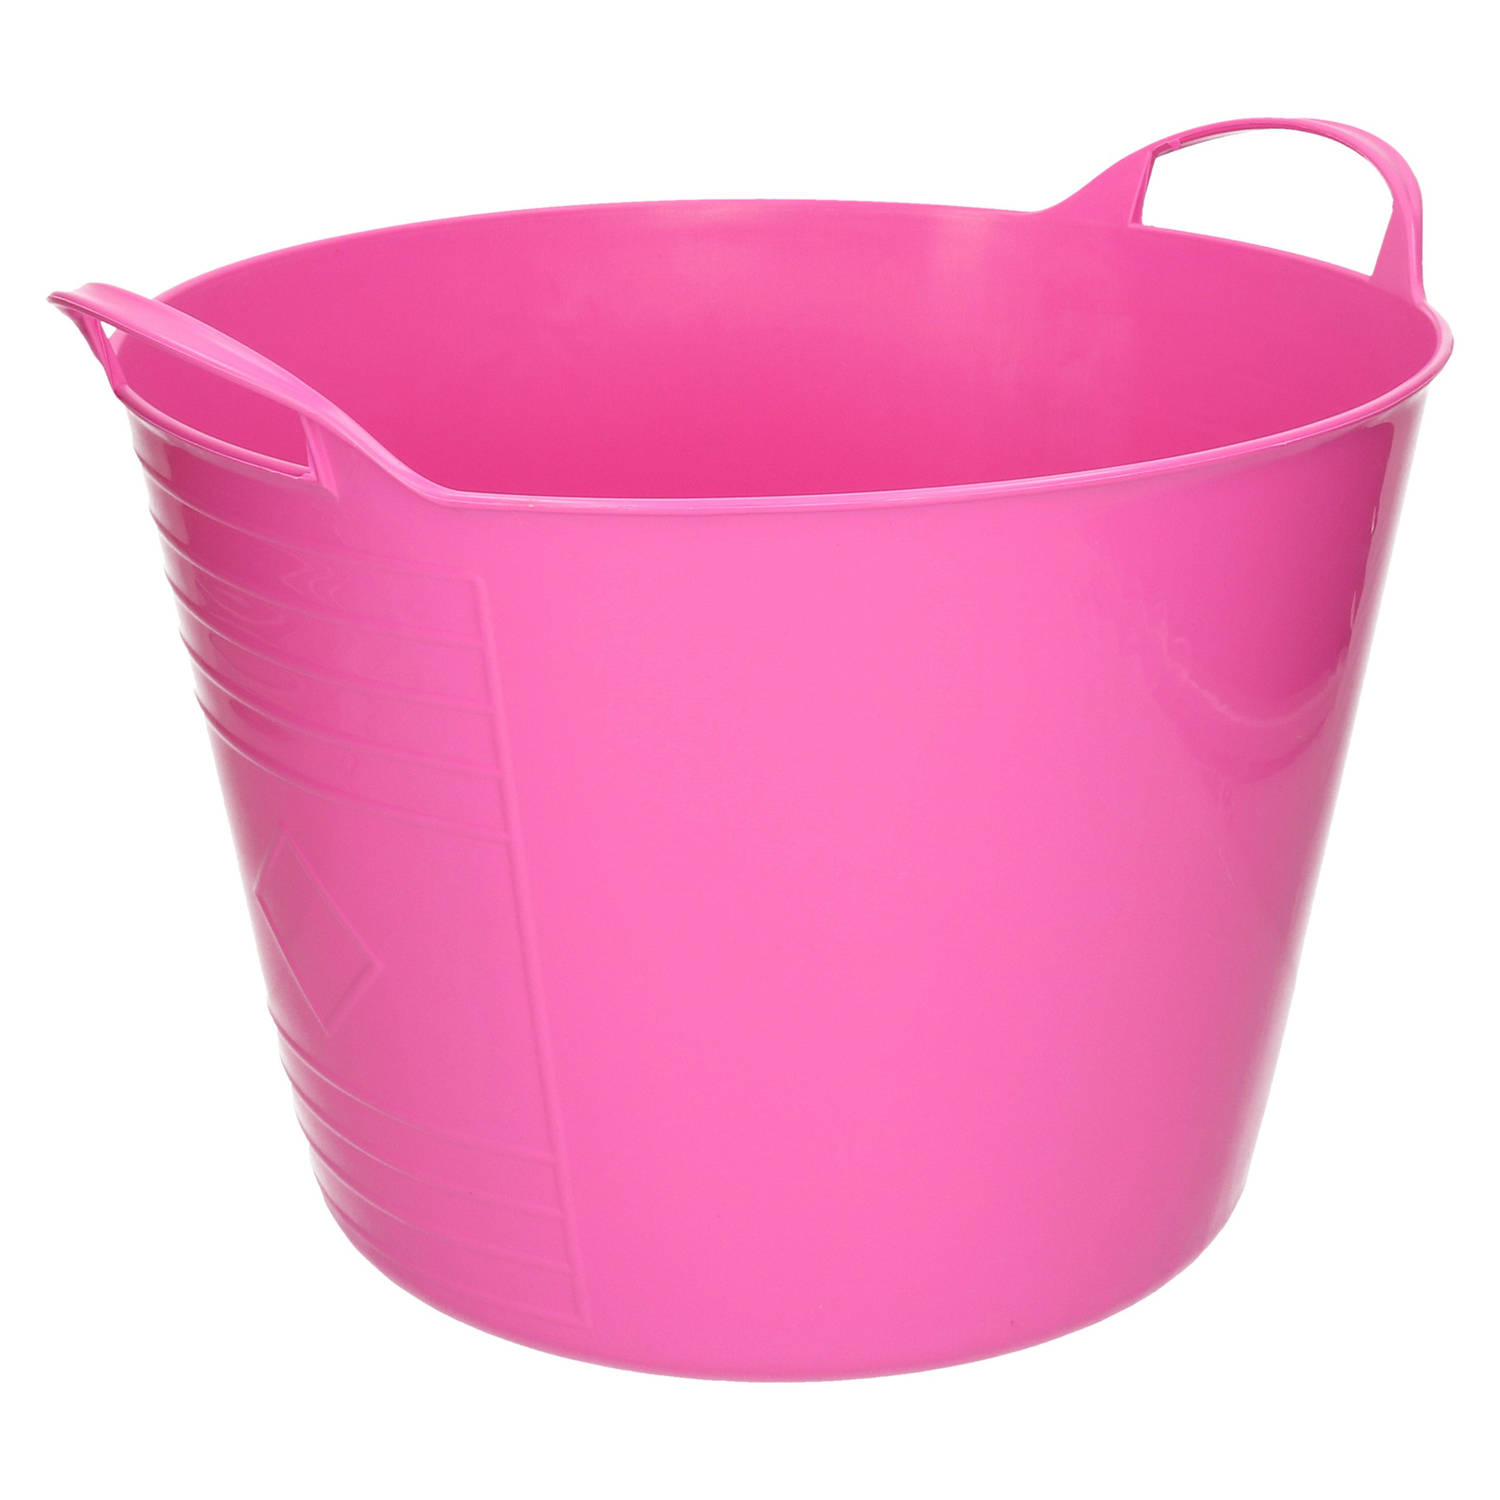 Flexibele emmer - roze - 15 liter - kunststof - 35 x 29 cm - Wasmanden